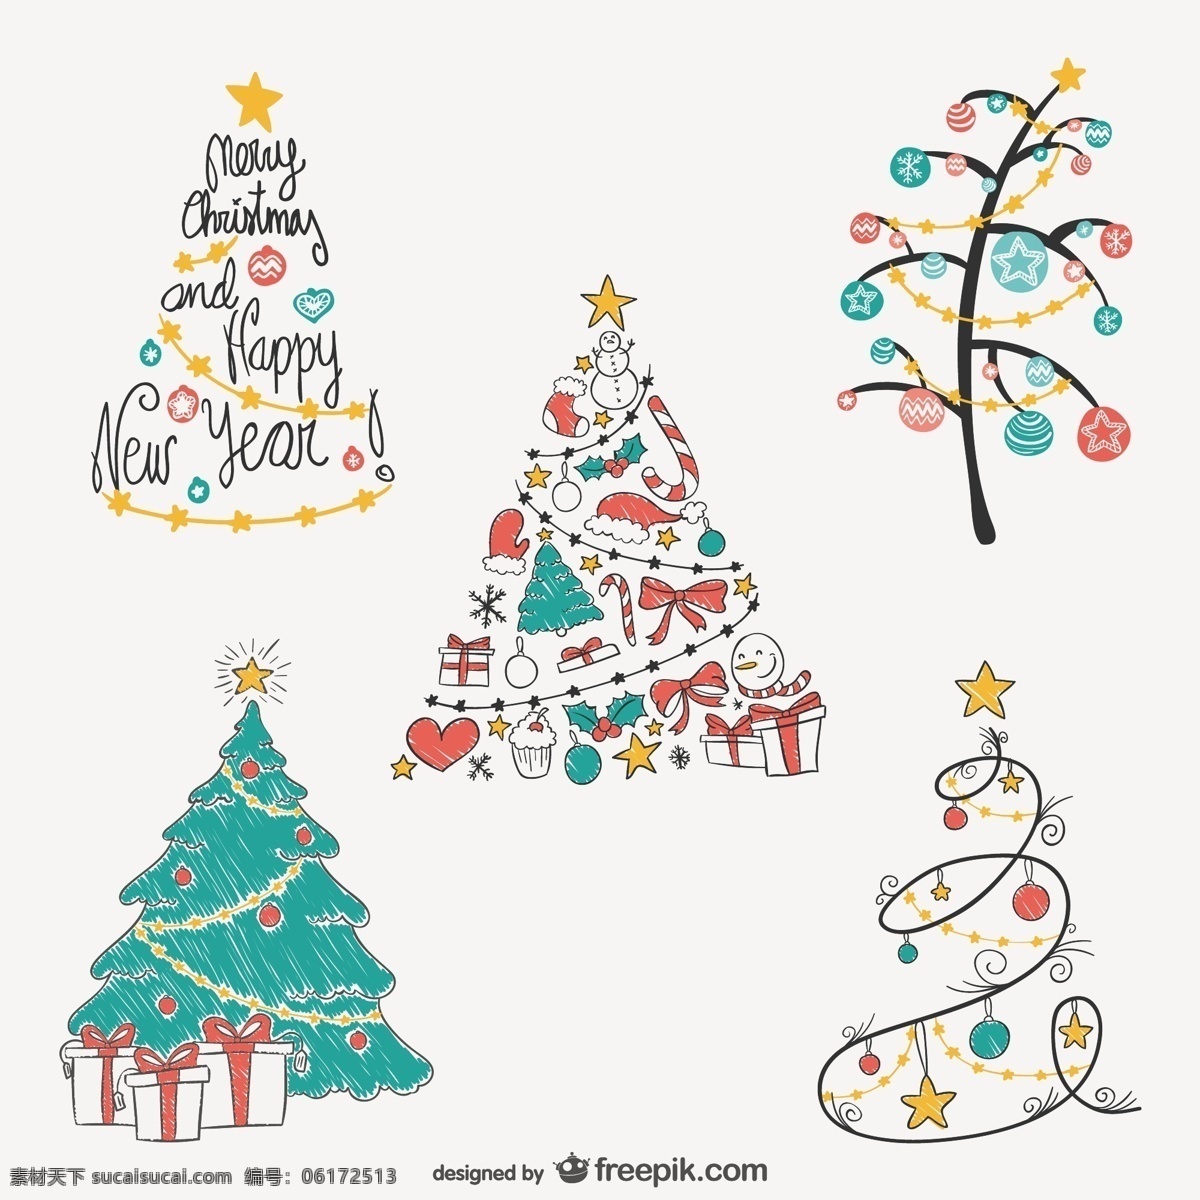 手绘 圣诞树 图纸 圣诞 快乐 新的一年 快活 圣诞节 树木 装饰 新年 圣诞装饰品 装饰品